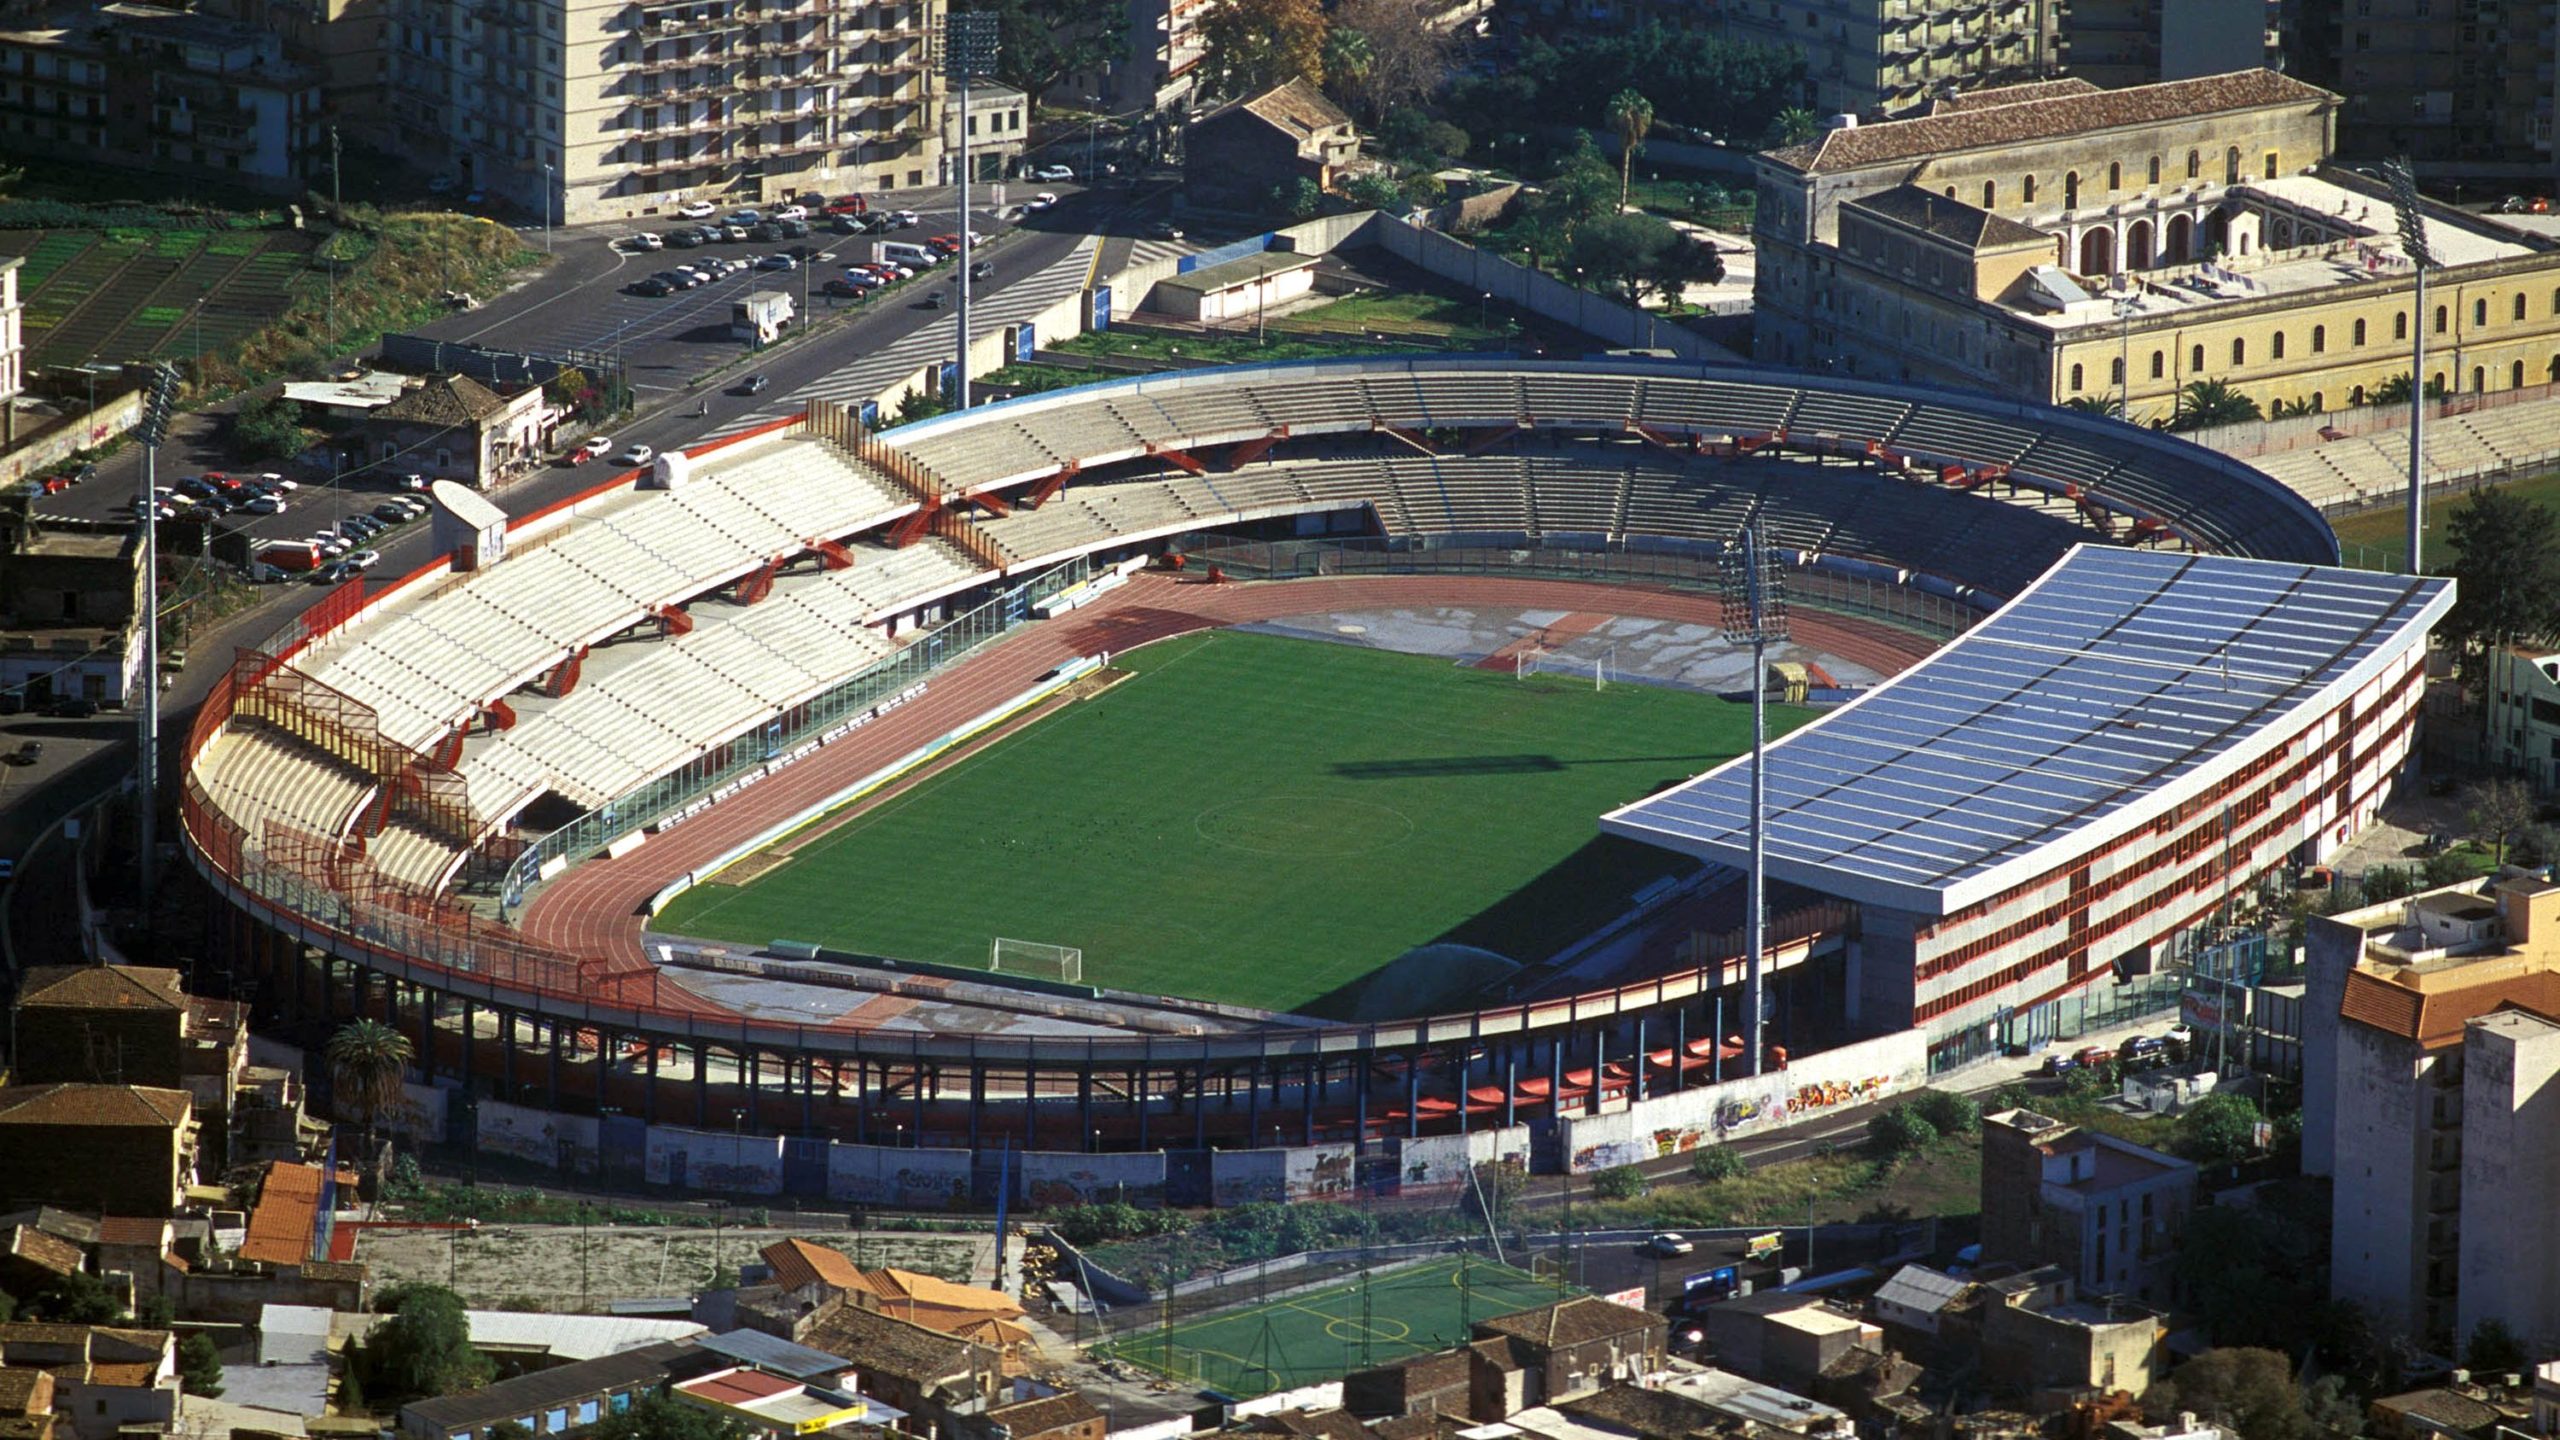 Stadium Guide: Stadio Ennio Tardini 